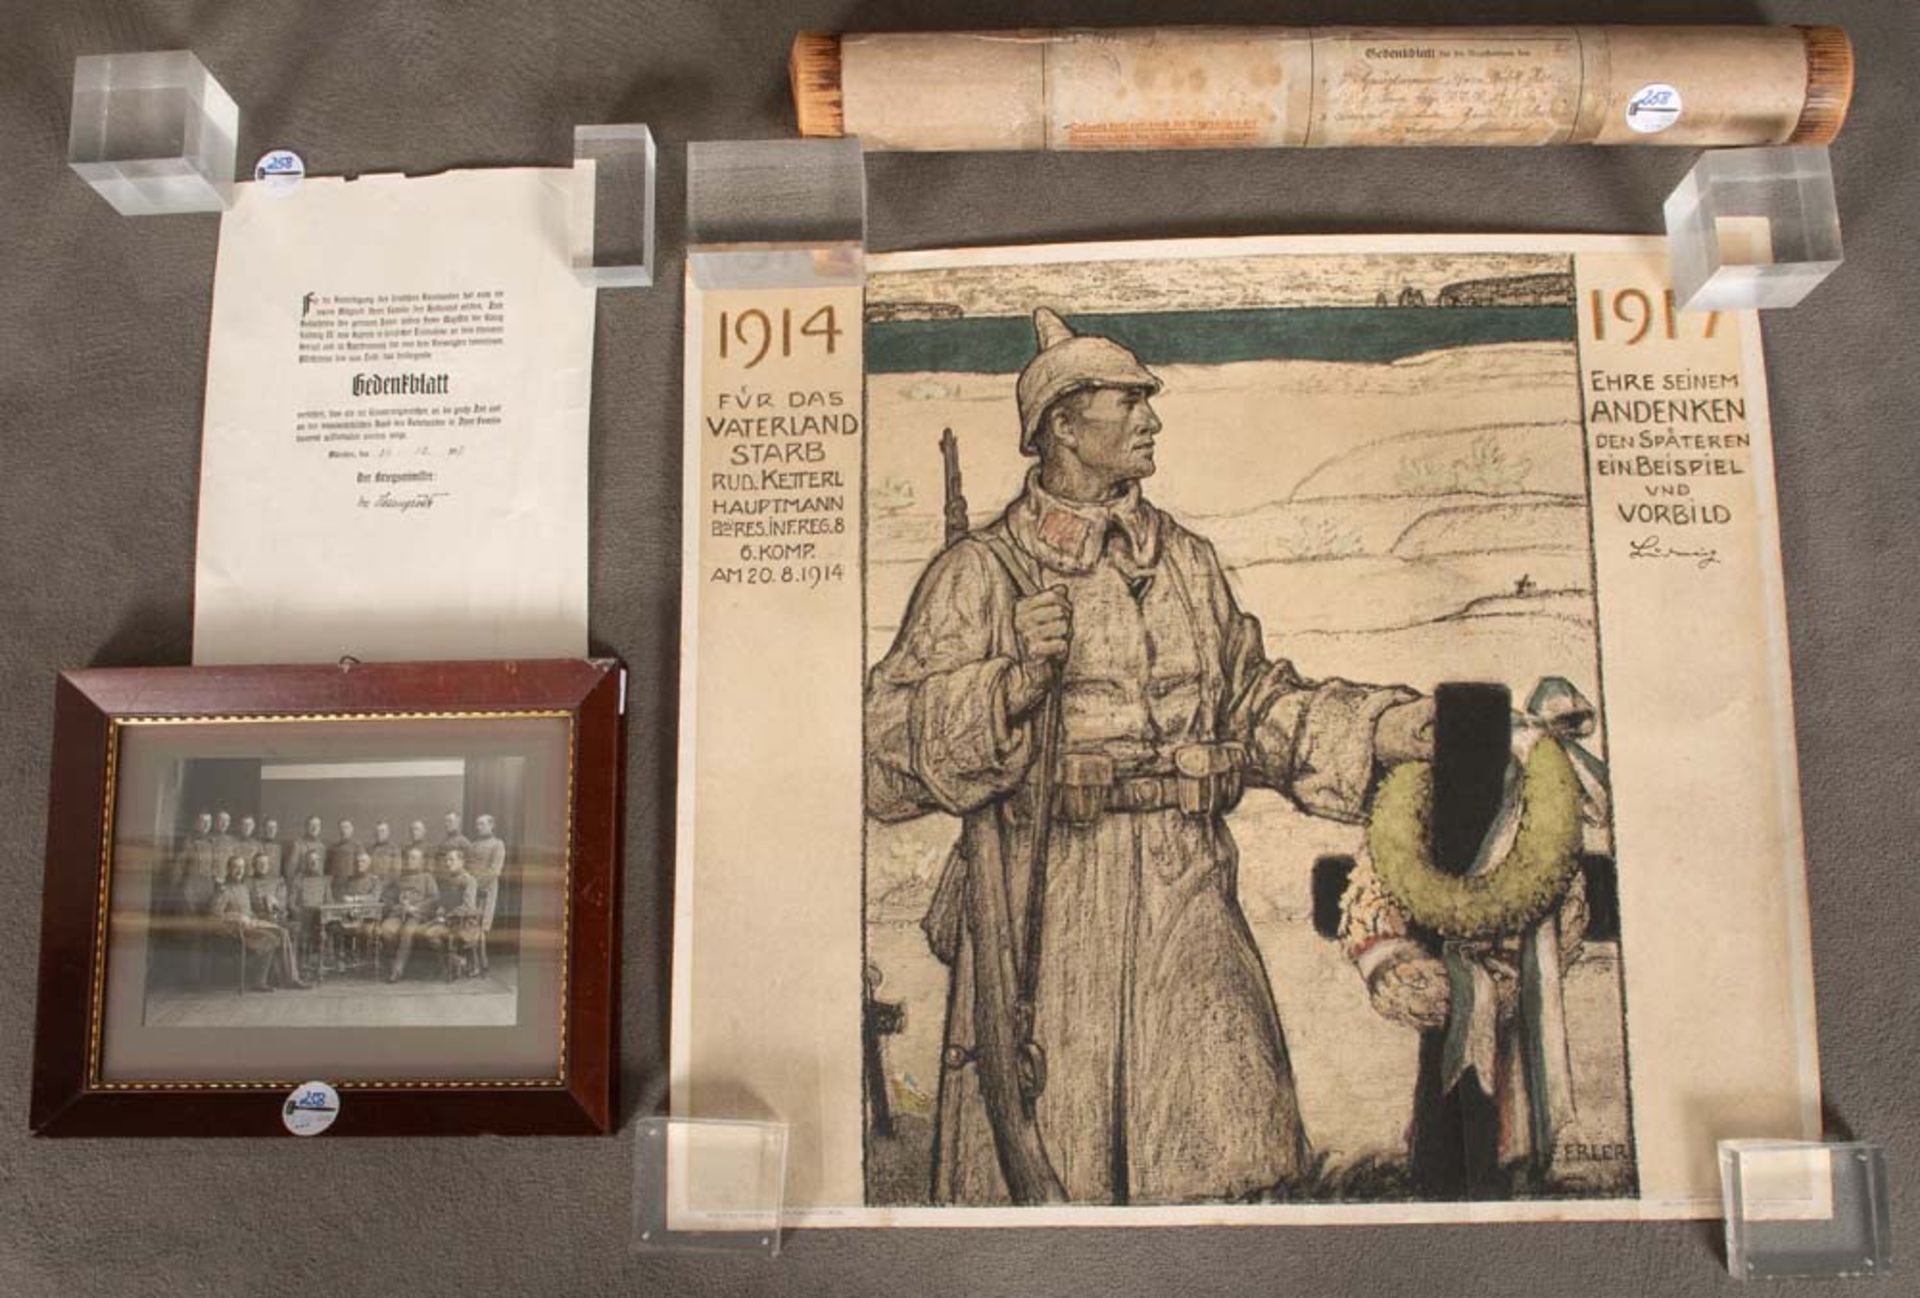 Gedenkblatt für den gefallenen Hauptmann 6. Kompanie Rud. Ketterl am 20.8.1914; dazu Original-